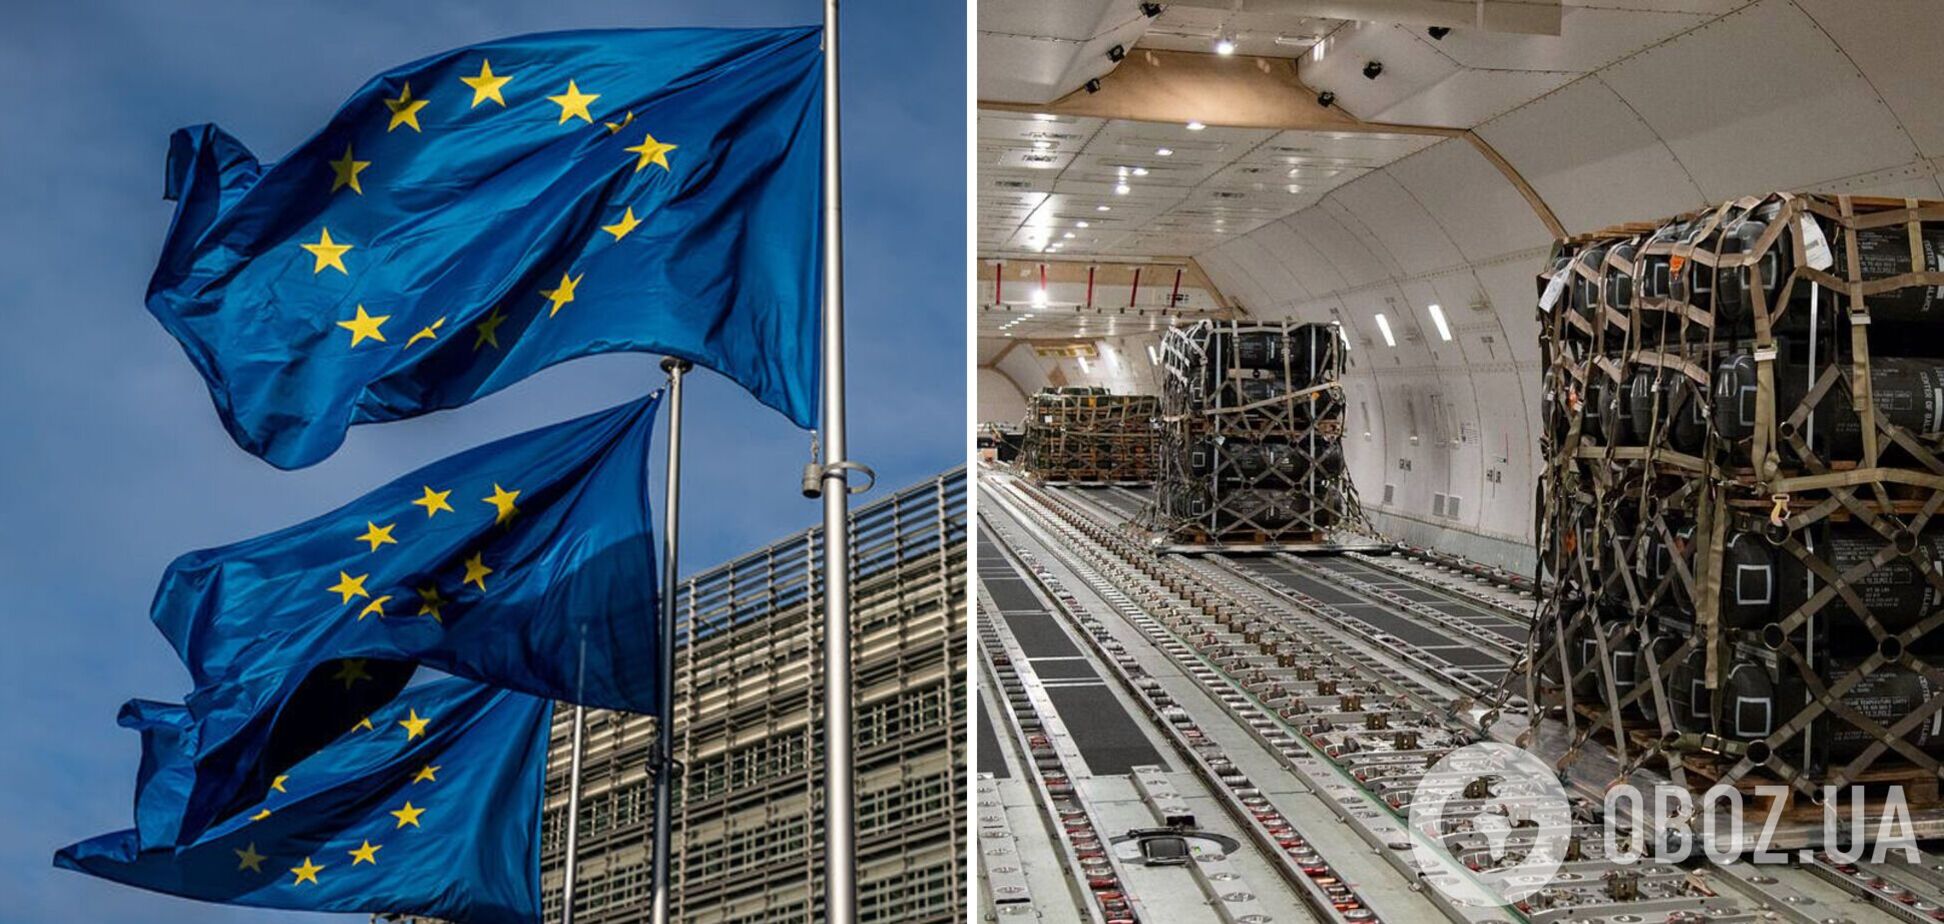 ЕС выделит еще 500 млн евро на поставки вооружения Украине